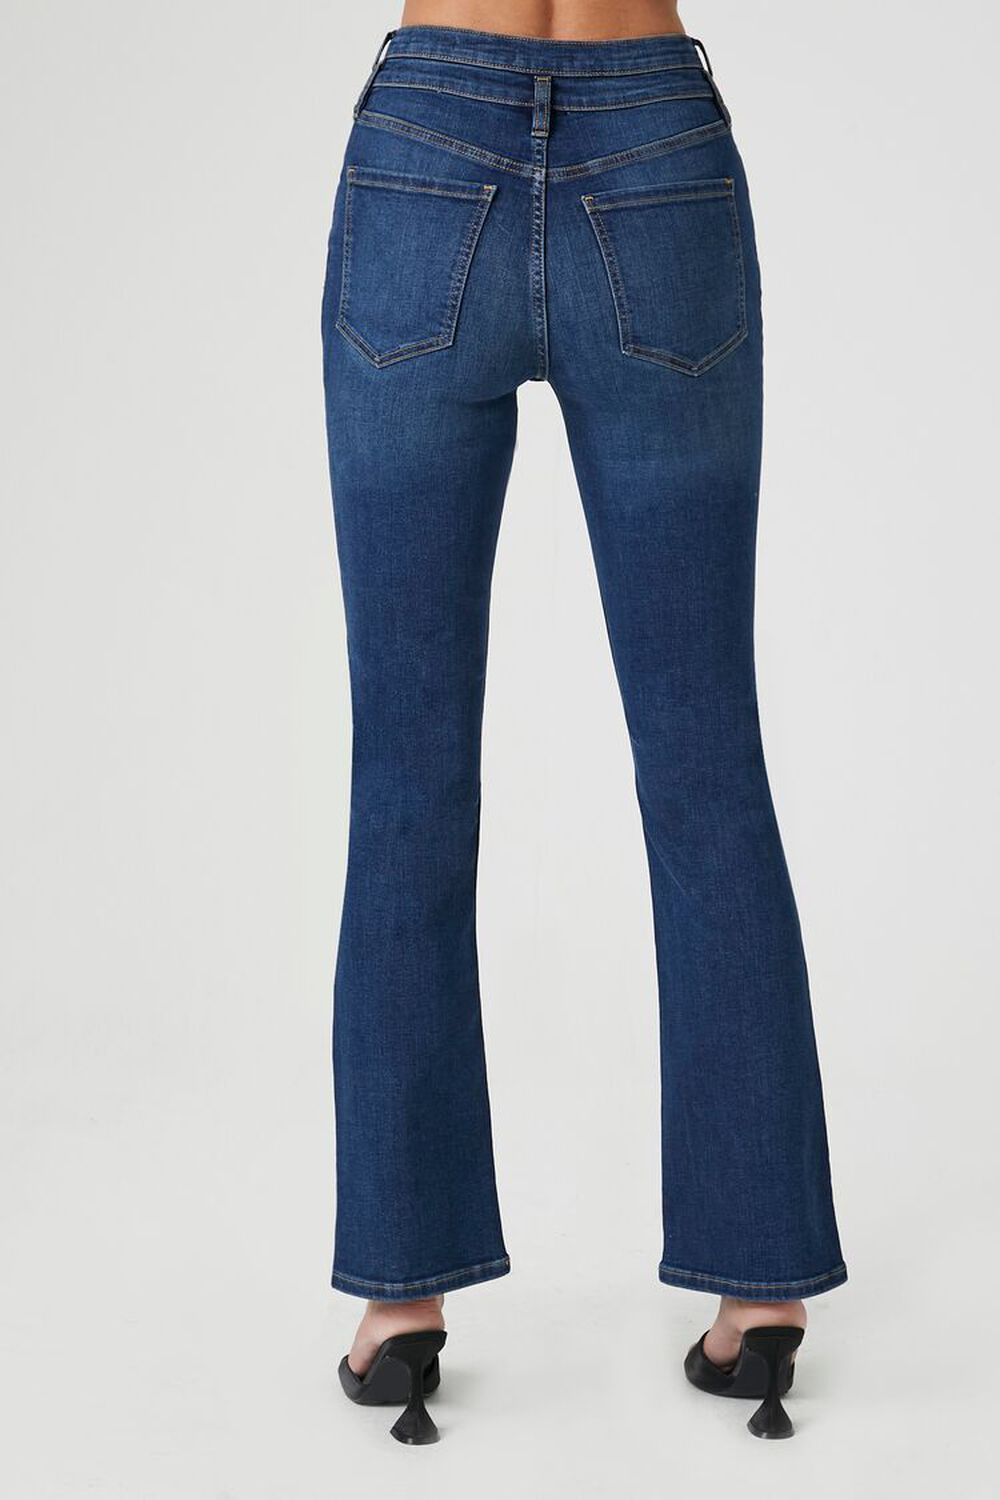 Denim High-Rise Bootcut Jeans